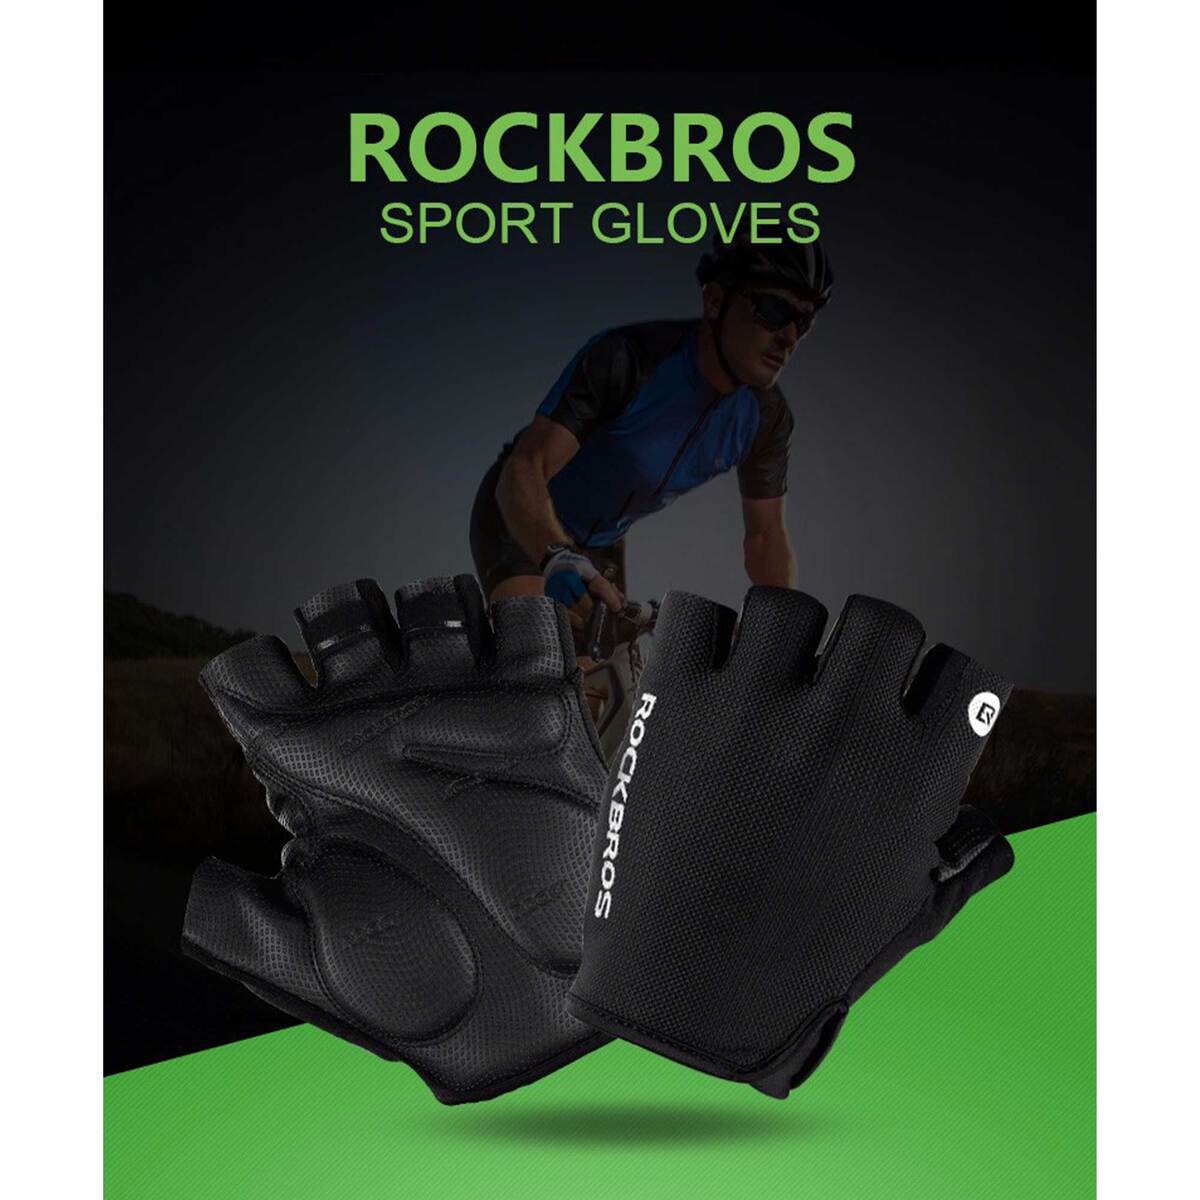 ROCKBROS Half Finger Cycling Gloves Black S106BK Large